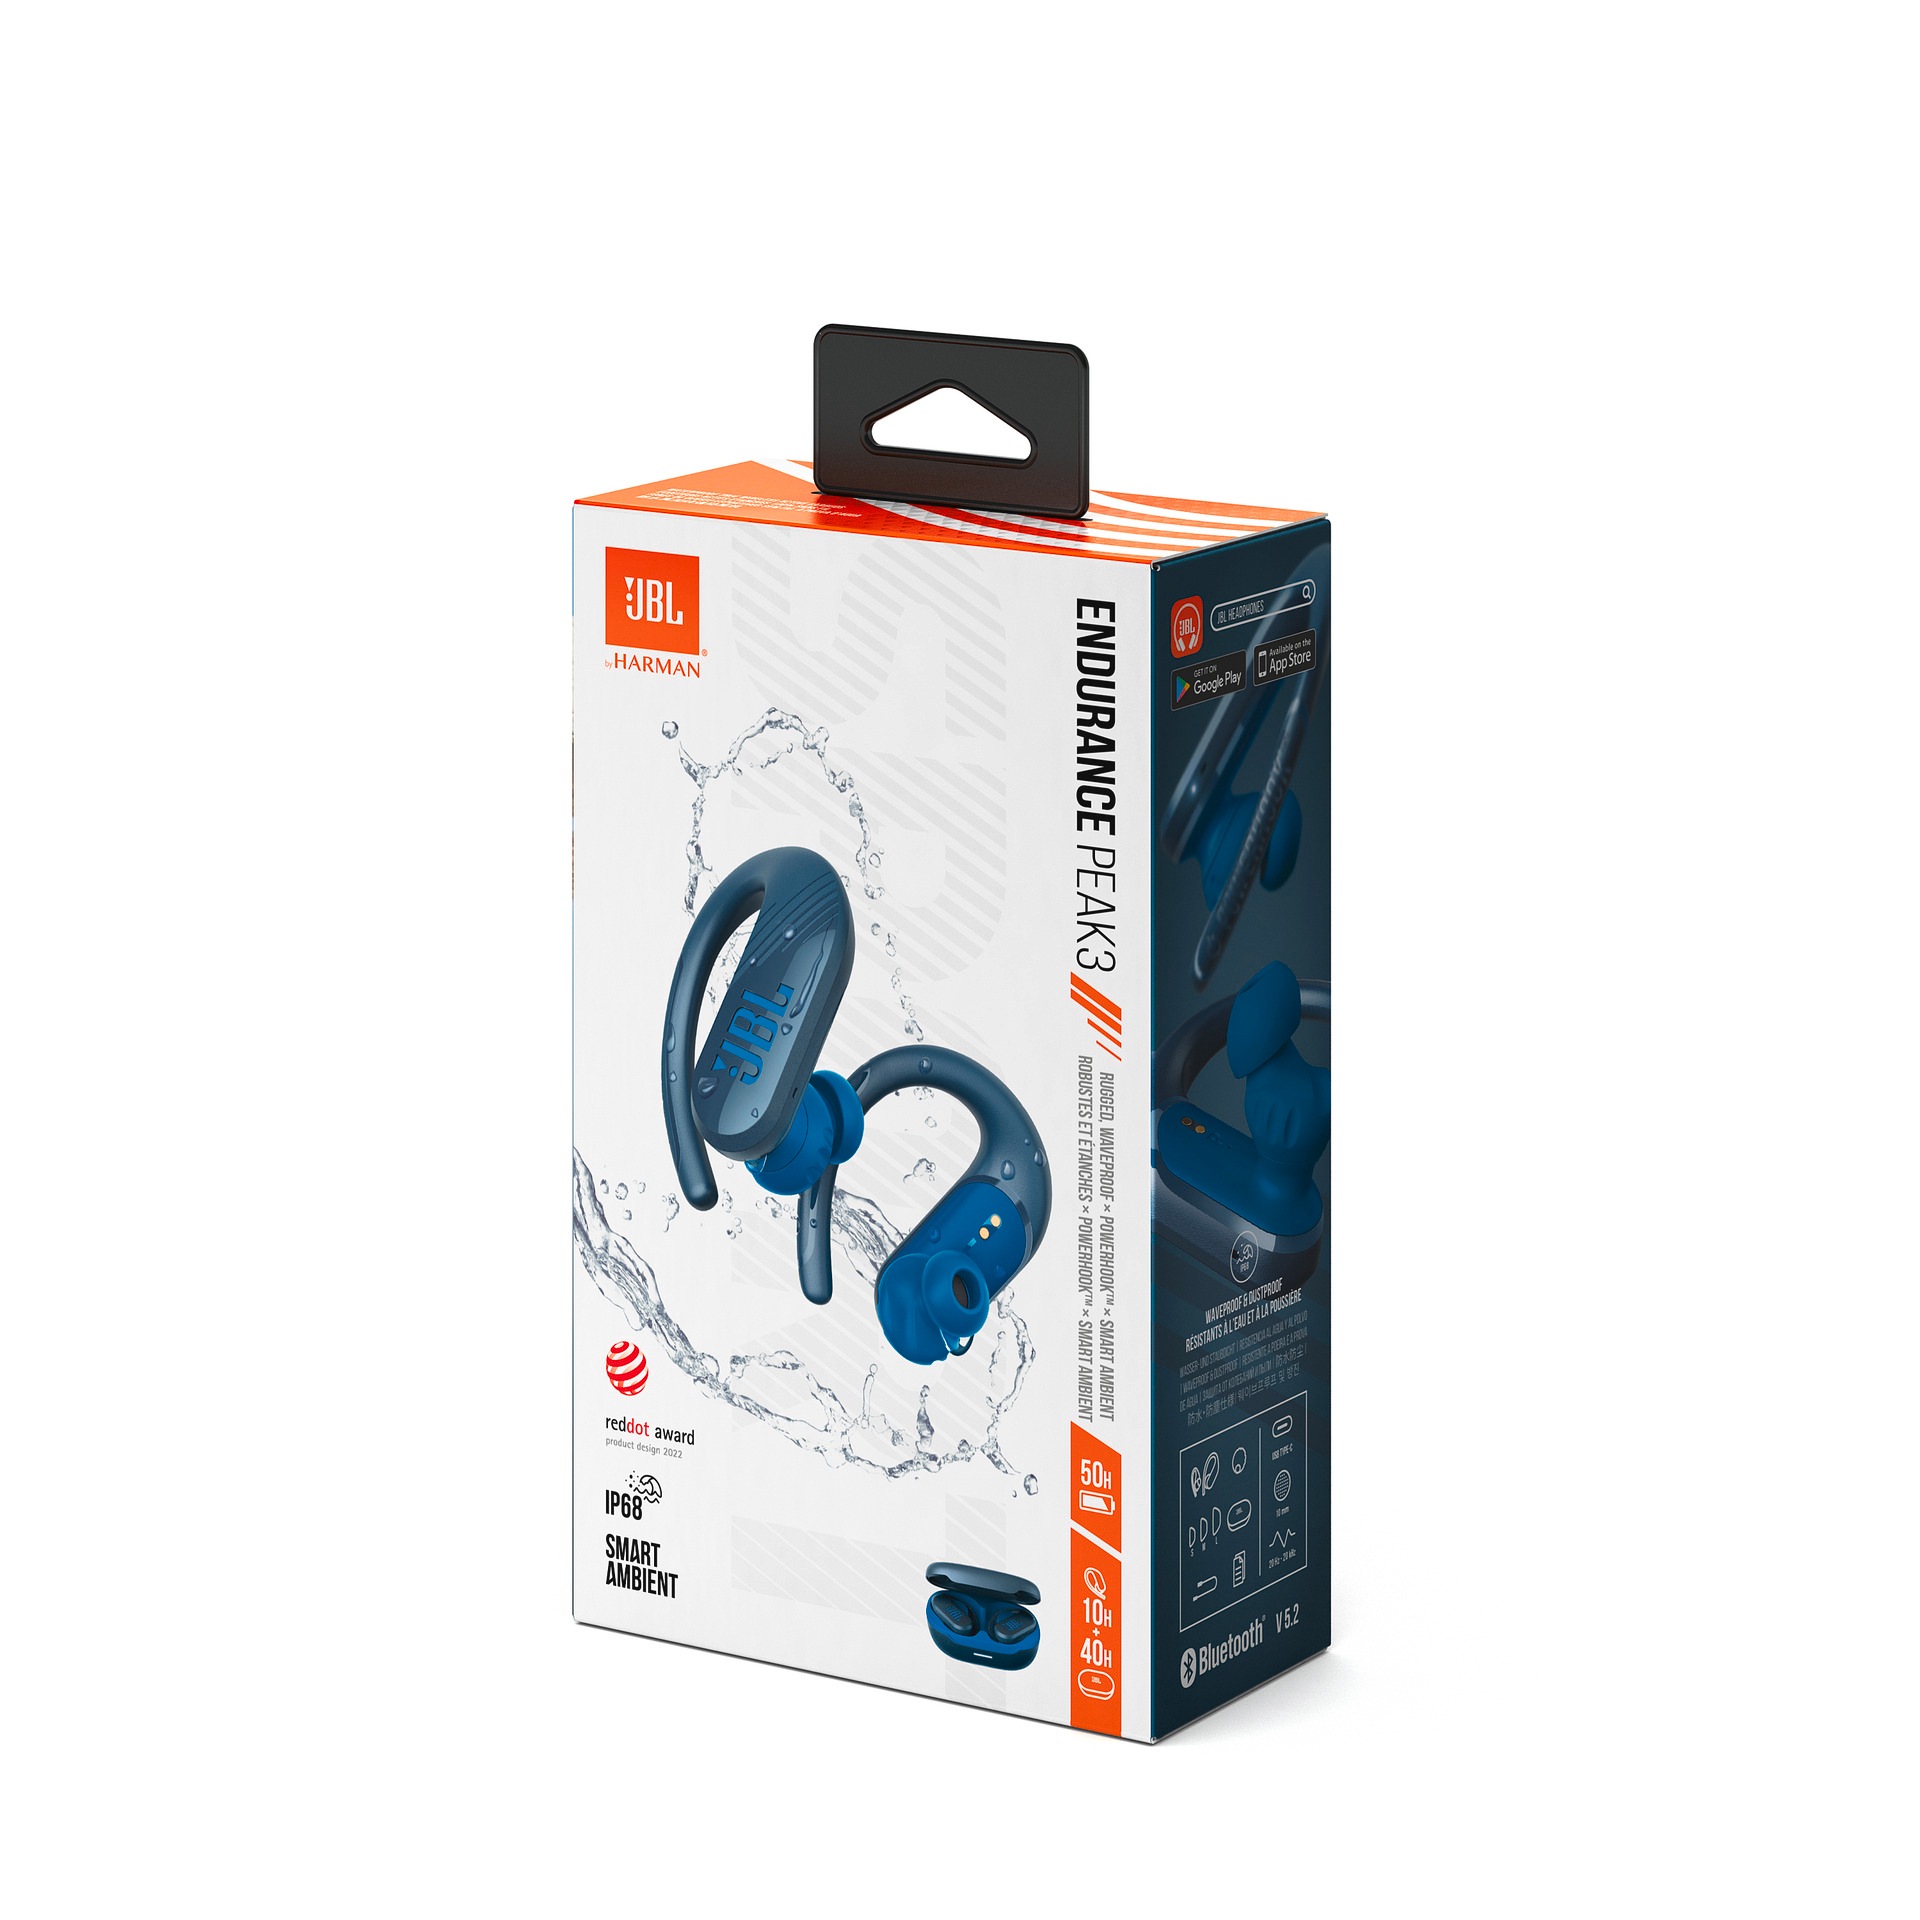 In-Ear-Kopfhörer - jetzt »Endurance Earbuds« Sport bei TW 3 JBL PEAK bestellen wireless OTTO